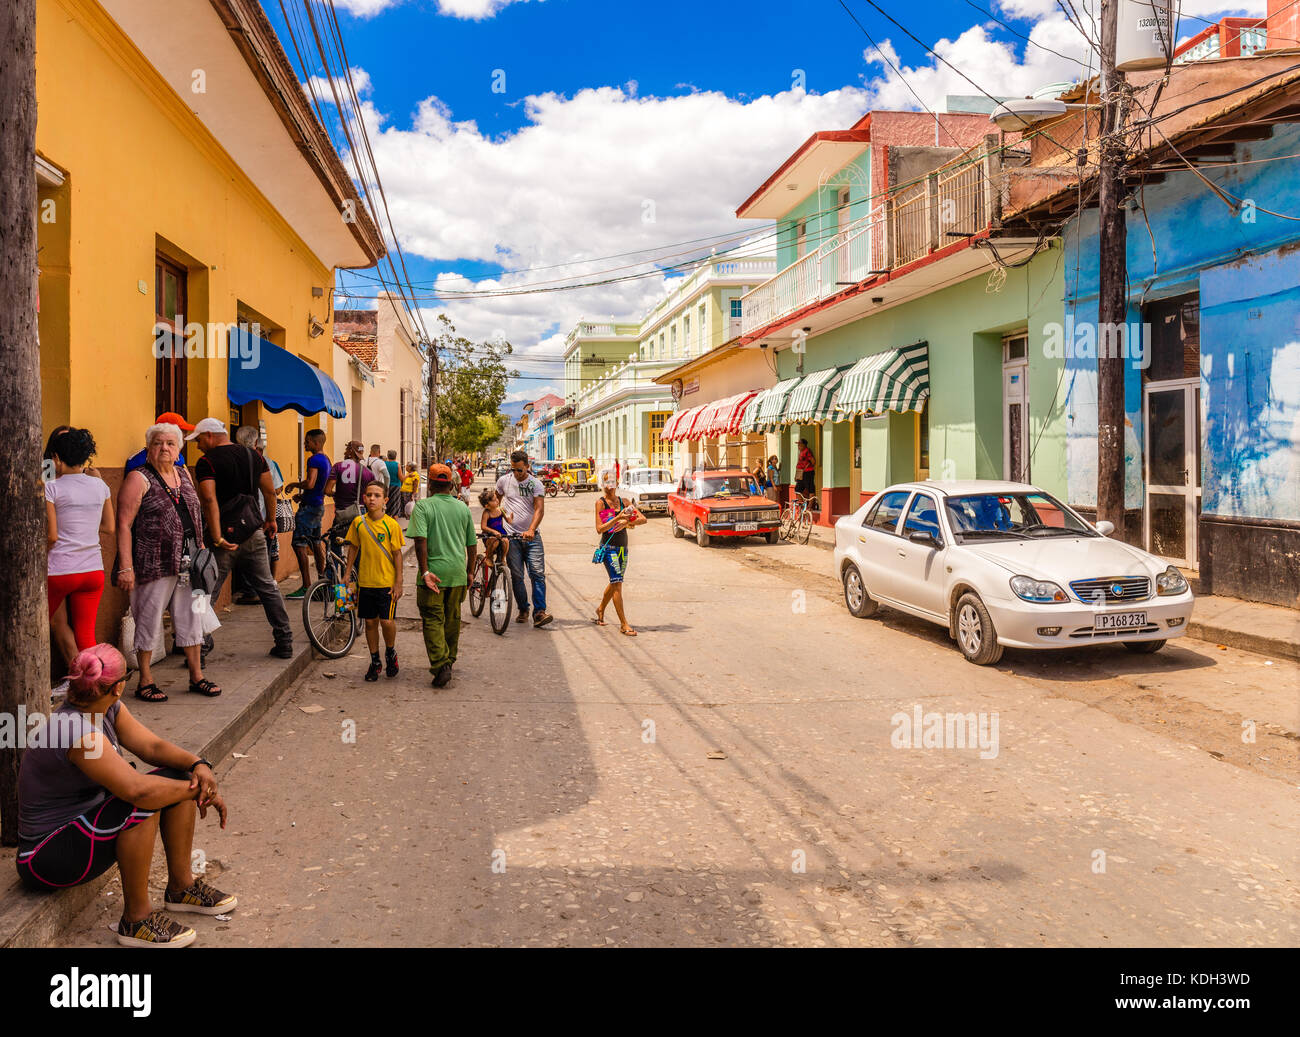 L'architecture coloniale espagnole aux maisons colorées, des rues pavées et des personnes dans une scène de rue, Trinidad, Sancti Spíritus, Cuba, Caraïbes Banque D'Images